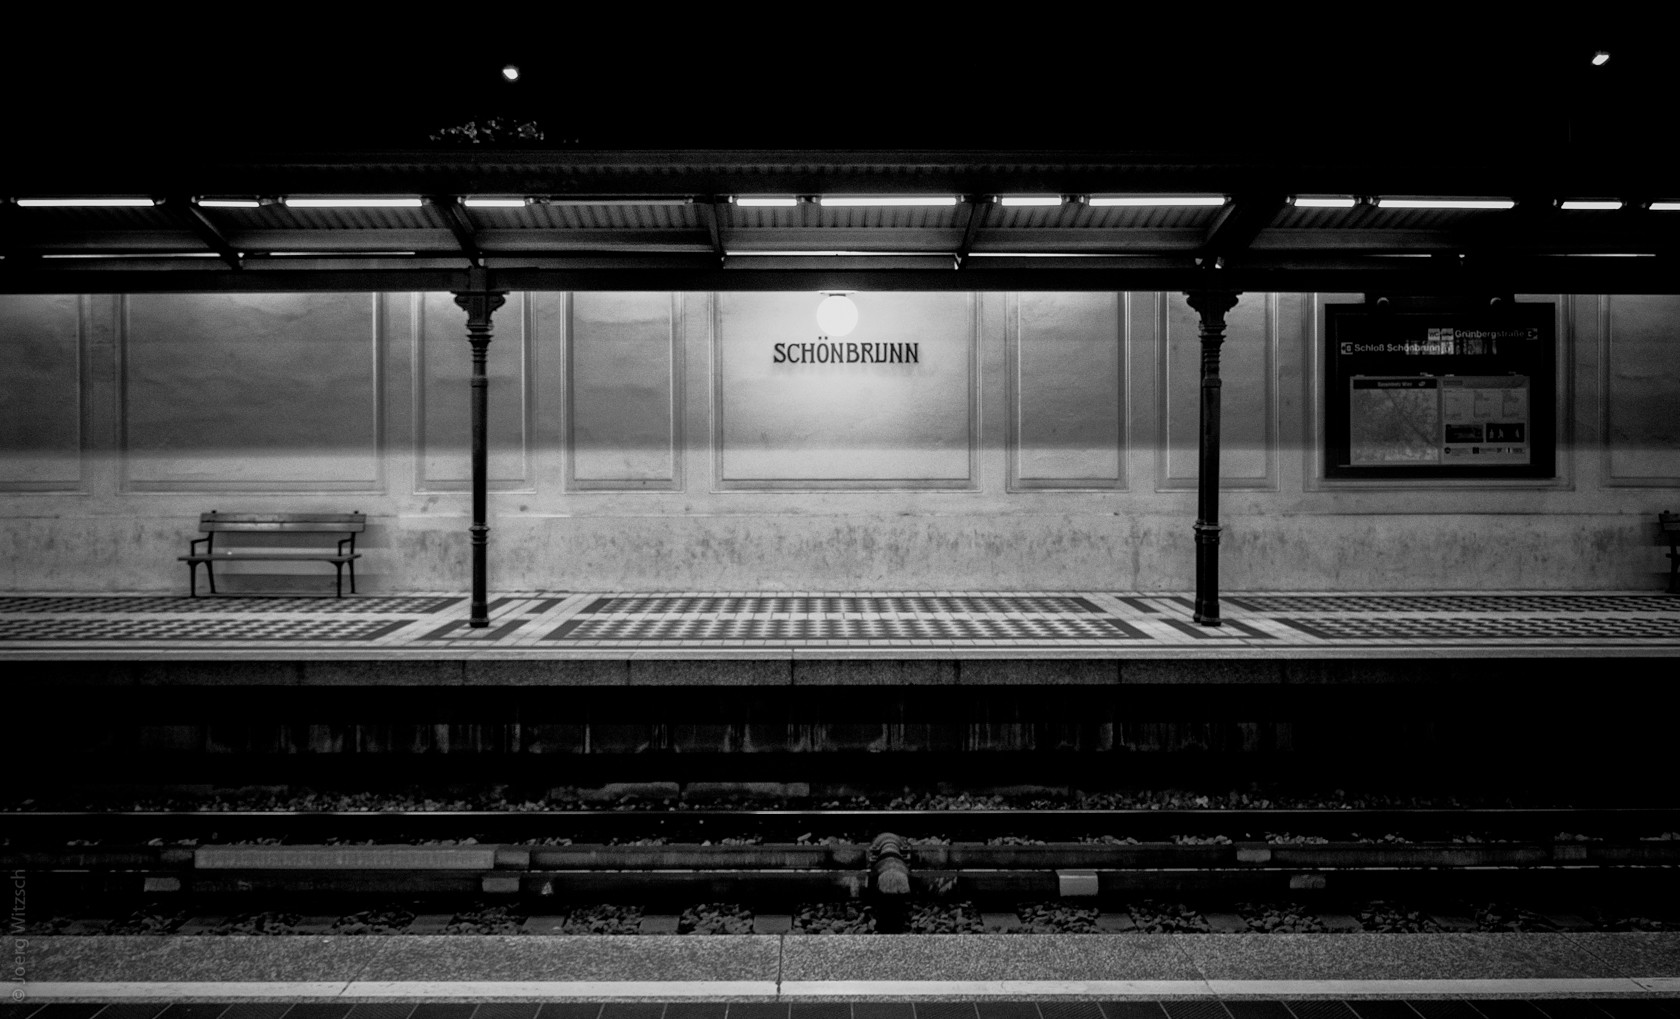 Schönbrunn Train Station (BW)